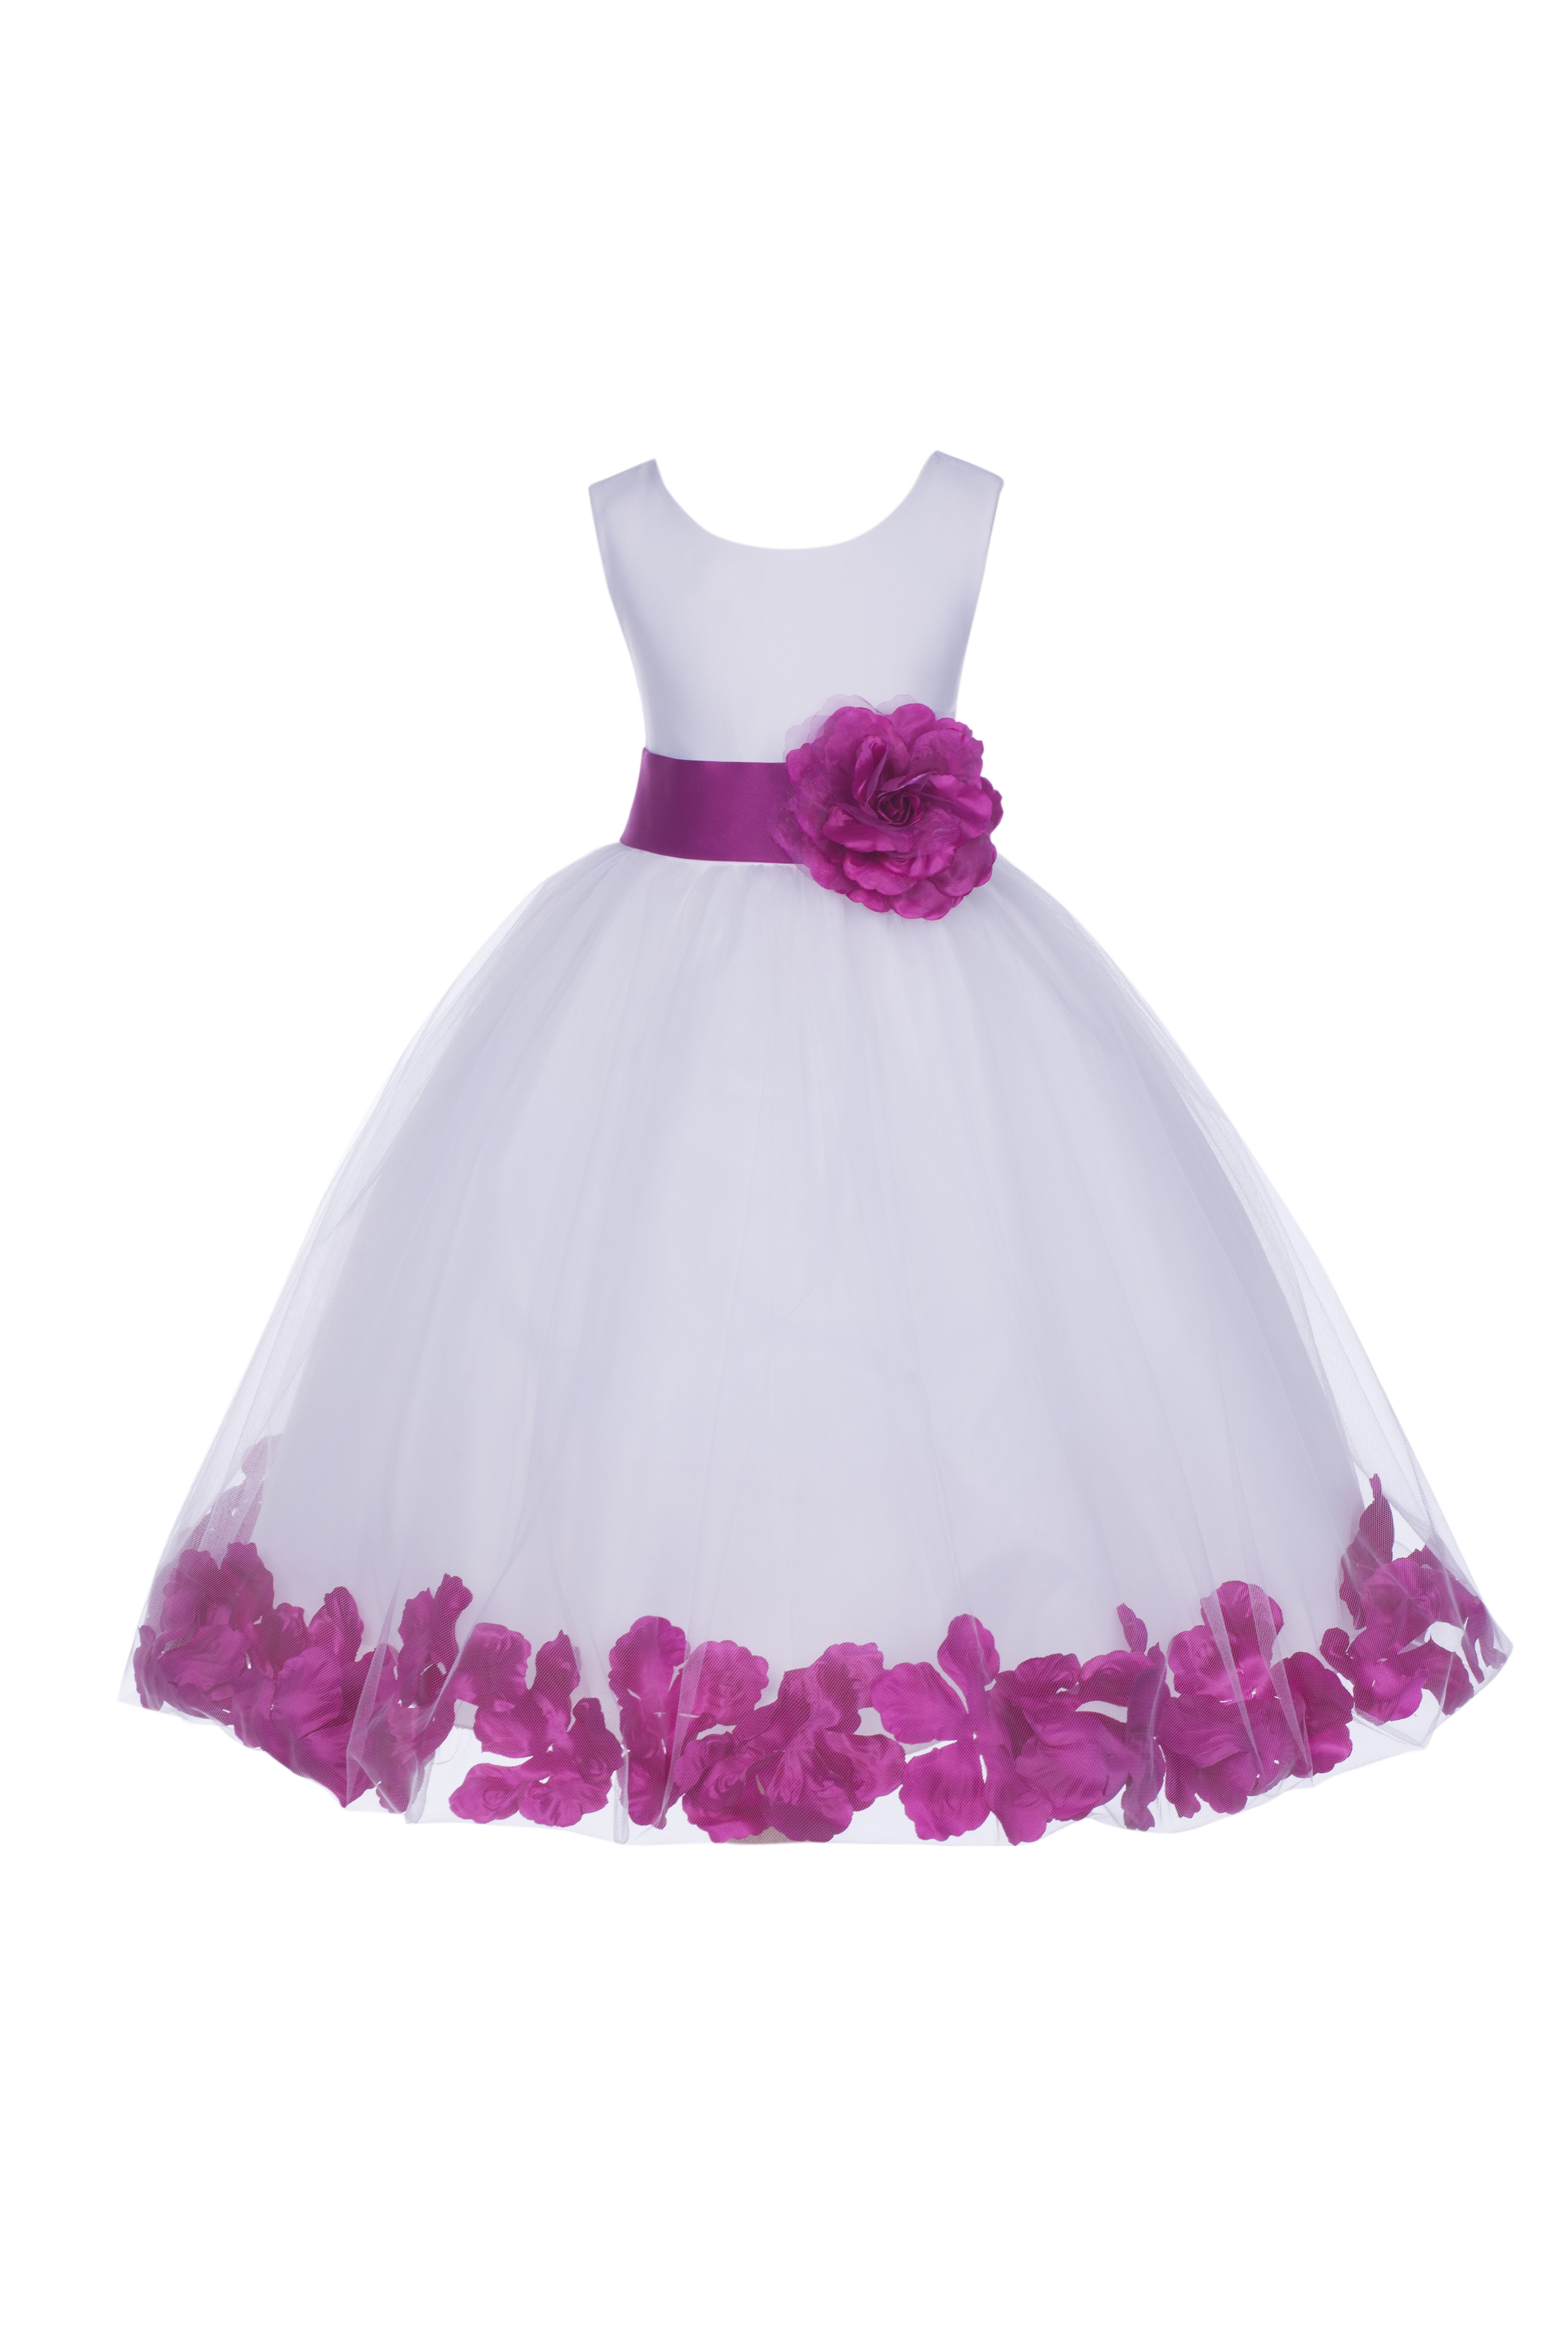 White/Raspberry Tulle Rose Petals Flower Girl Dress Wedding 302S